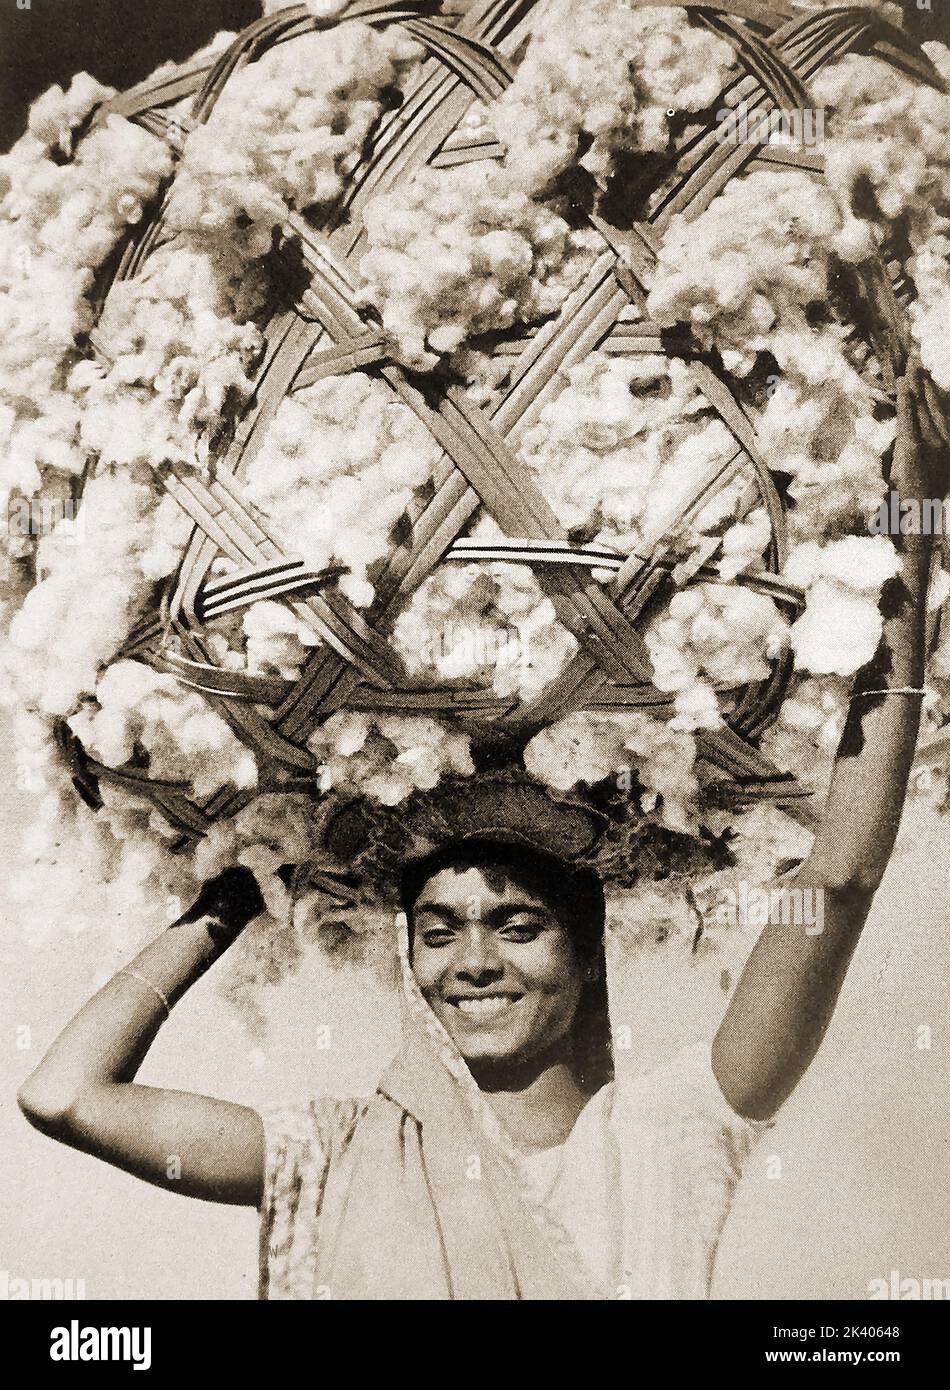 A 1947  photo of an Indian worker carrying a bale of cotton in a wicker frame on his head for use in their successful textile industry. ---   1947 में एक भारतीय कामगार की एक तस्वीर जिसमें वह अपने सफल कपड़ा उद्योग में उपयोग के लिए अपने सिर पर एक विकर फ्रेम में कपास की एक गांठ लिए हुए था।  ---۱۹۴۷ کی ایک تصویر جس میں ایک ہندوستانی مزدور اپنی کامیاب ٹیکسٹائل صنعت میں استعمال کے لیے اپنے سر پر بید کے فریم میں کپاس کی گانٹھ اٹھائے ہوئے ہے۔ Stock Photo